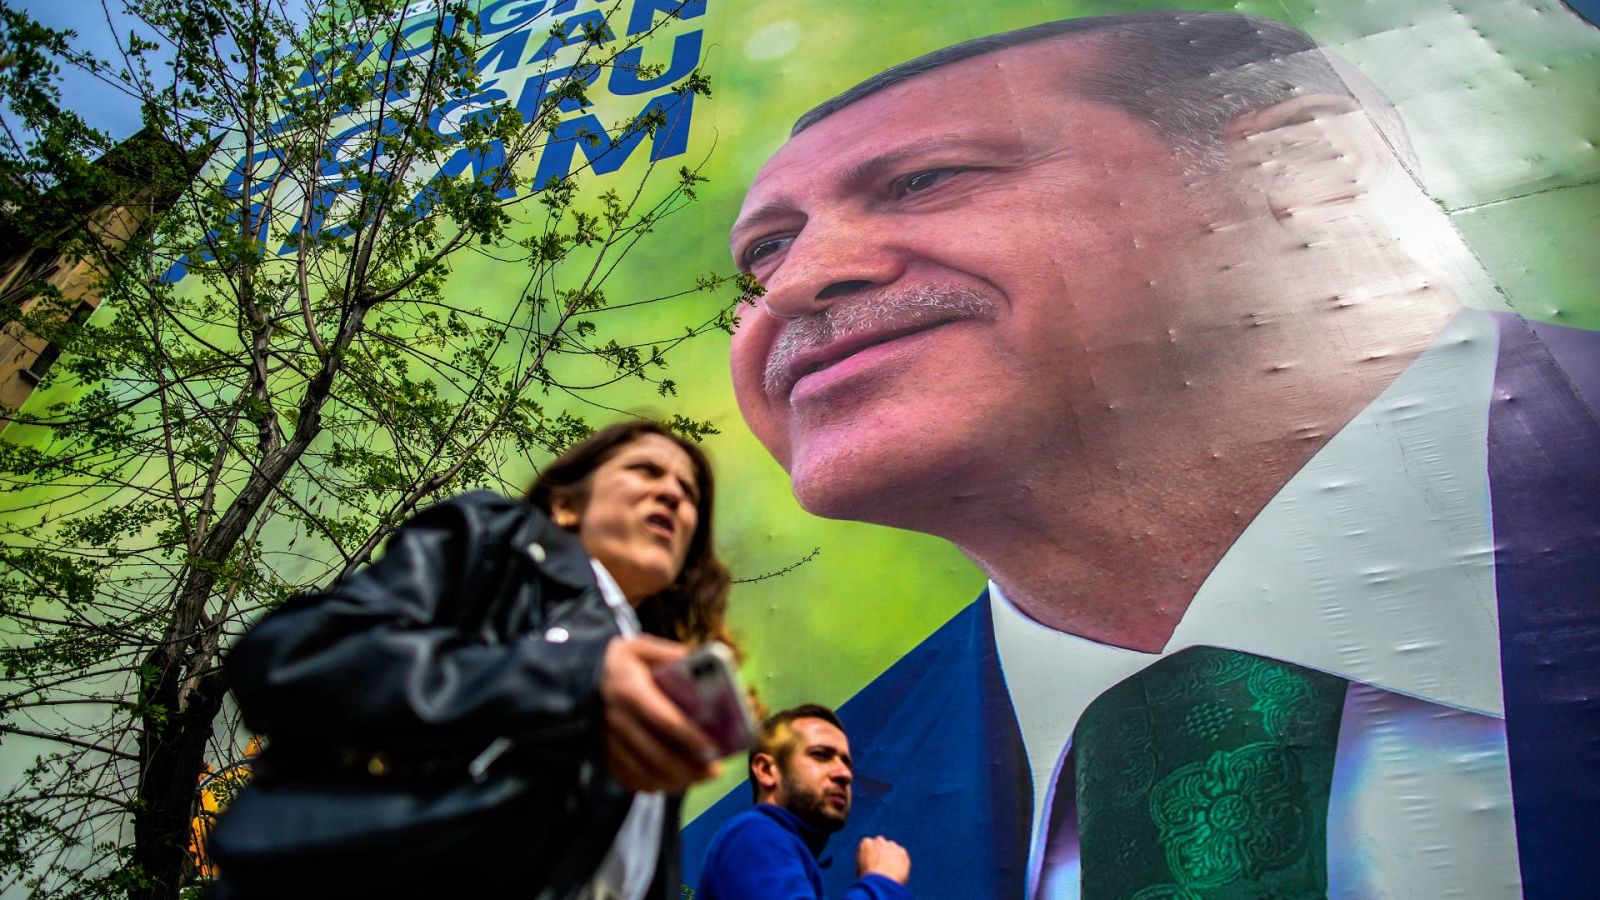 Cartel electoral de Recep Tayyip Erdogan en Estambul, Turquía. Foto: AP Photo/Emrah Gurel